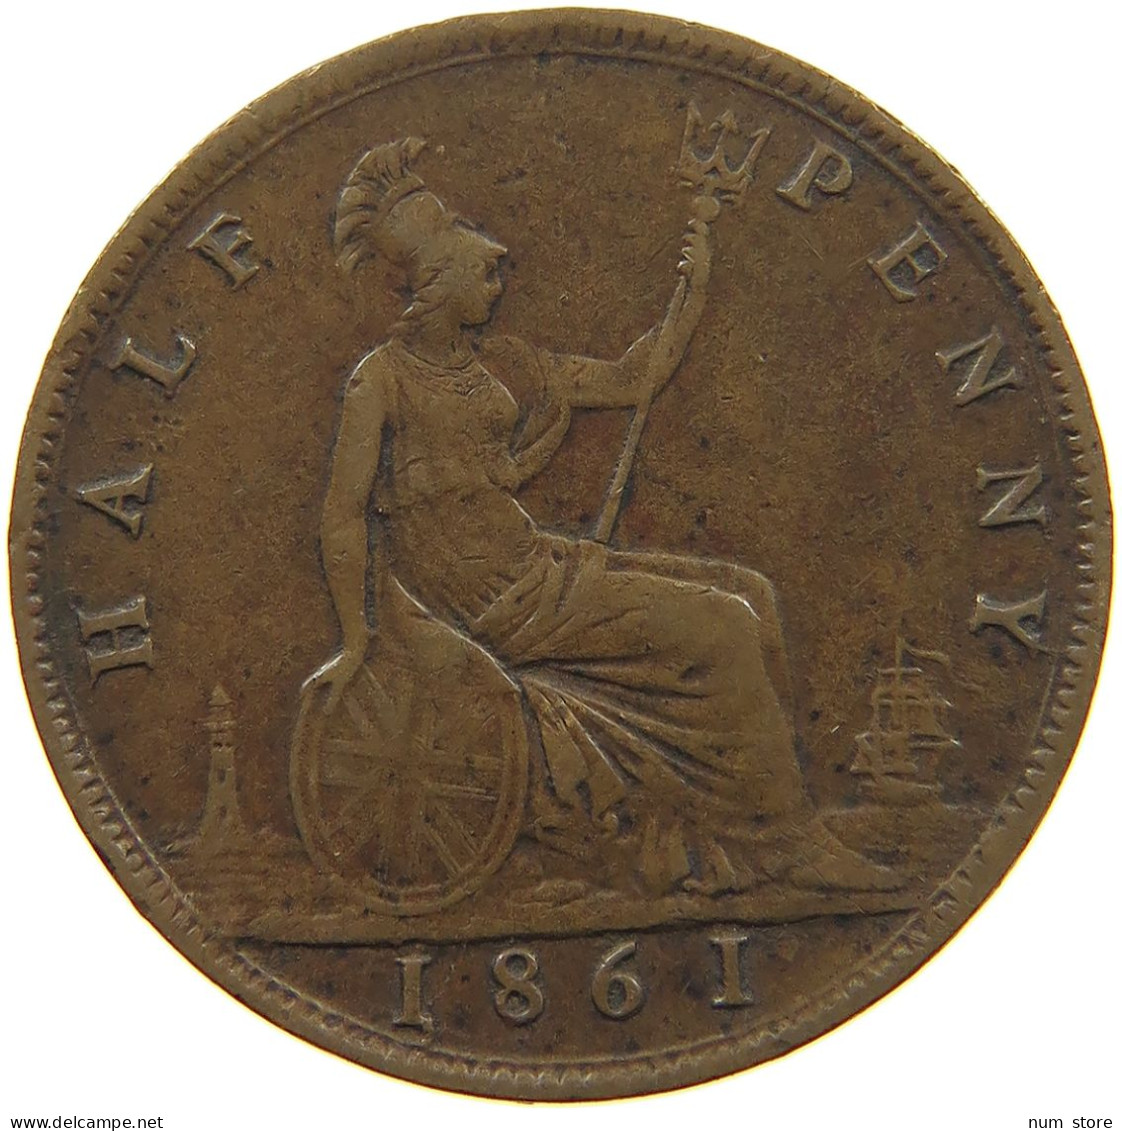 GREAT BRITAIN HALFPENNY 1861 Victoria 1837-1901 #c008 0353 - C. 1/2 Penny